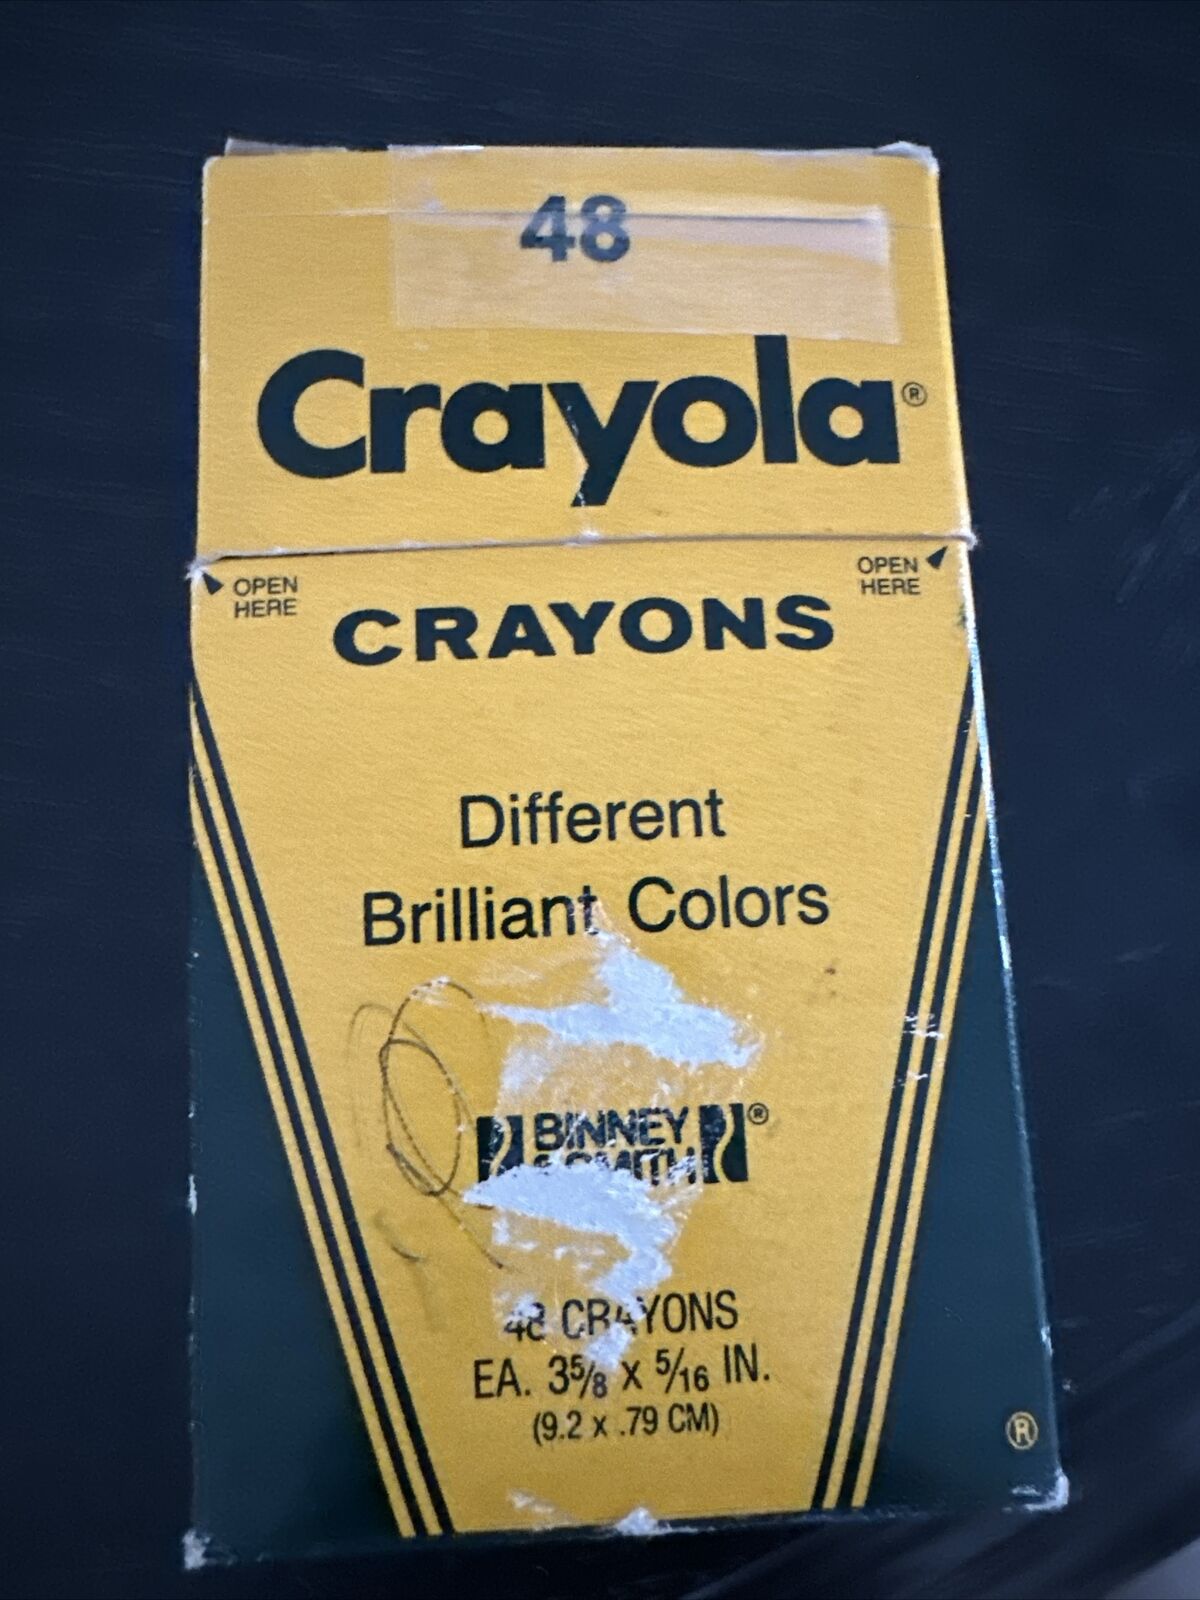 RARE VINTAGE FIND Crayola 48 Ct No.48 Crayons (Binney & Smith, USA) Open Box